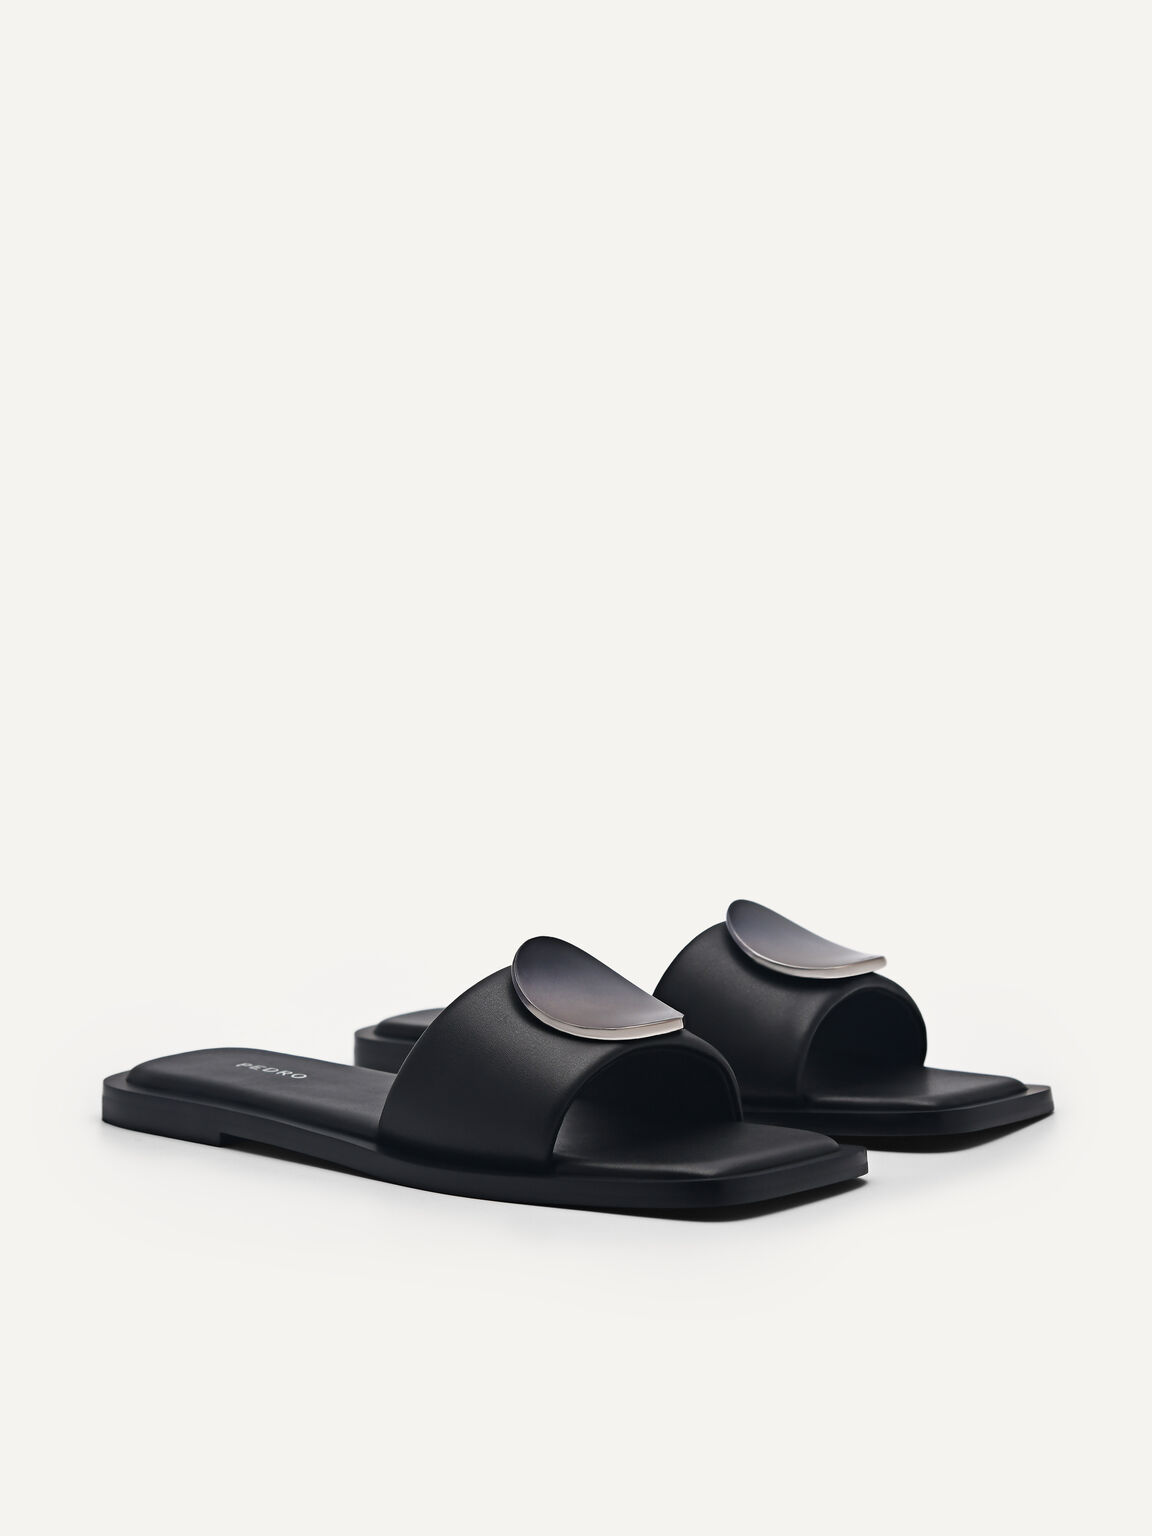 Vibe Square Toe Sandals, Black, hi-res